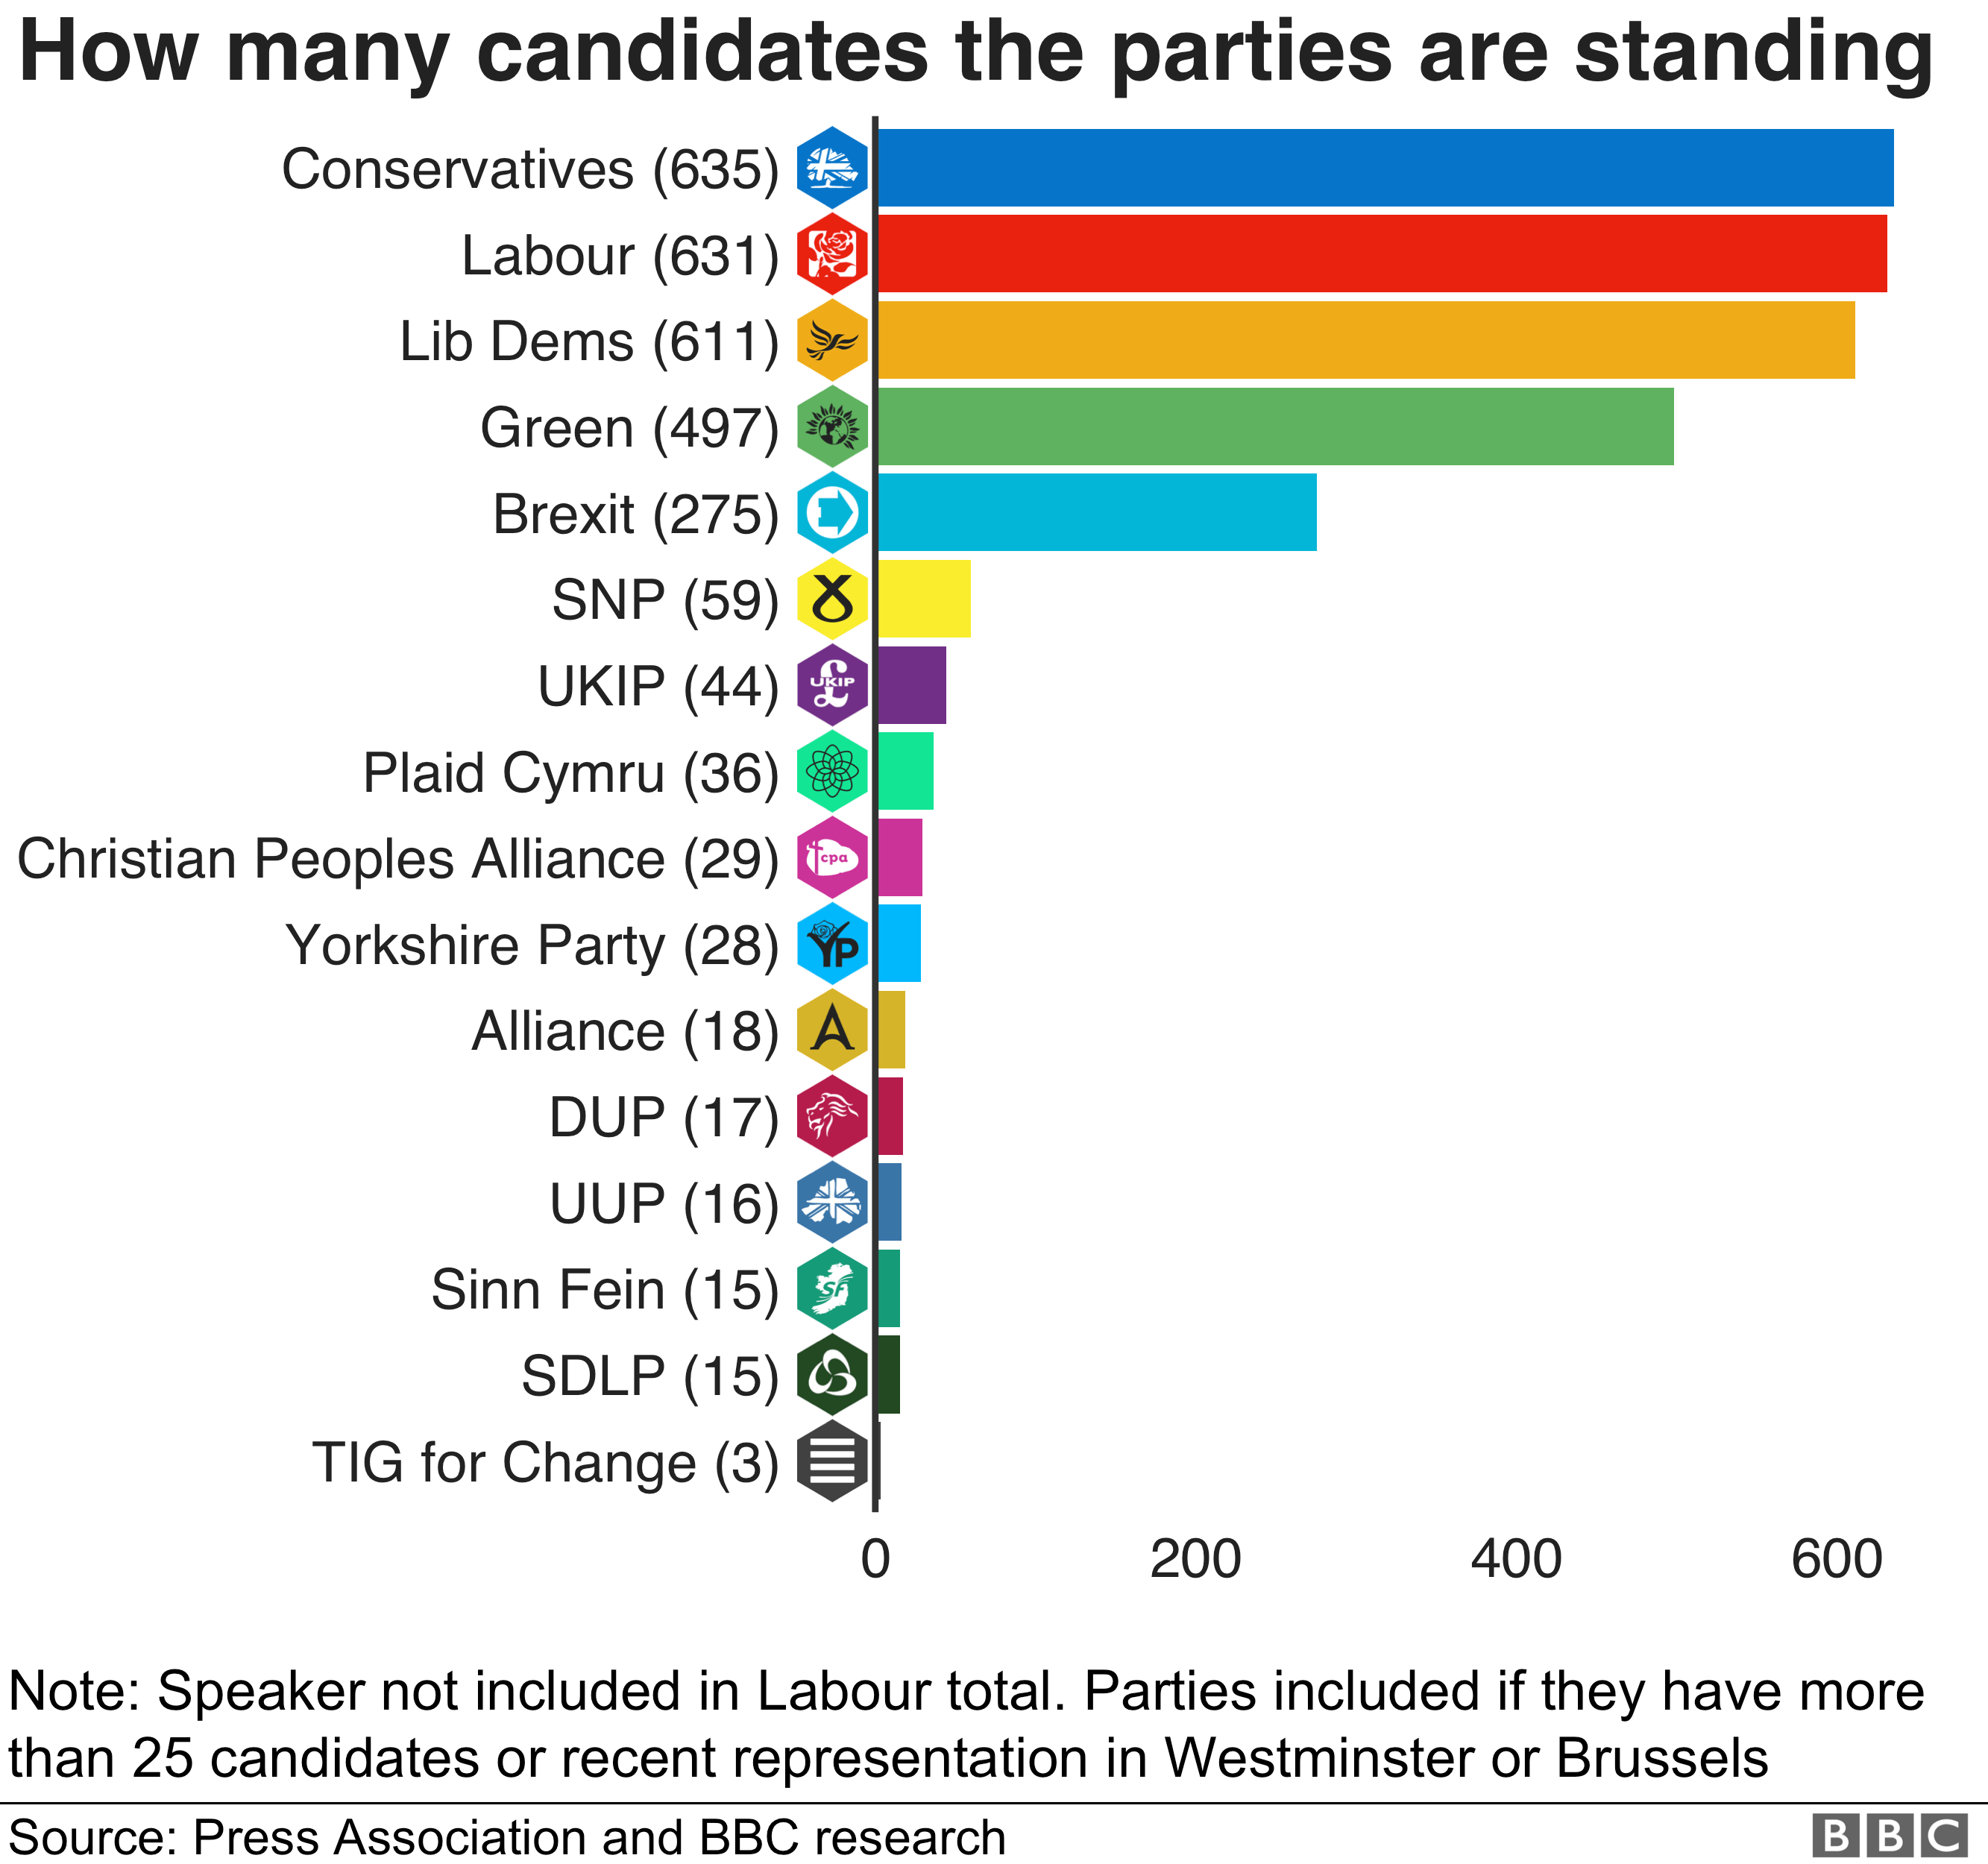 У партий больше всего кандидатов - у консерваторов больше всего (635)